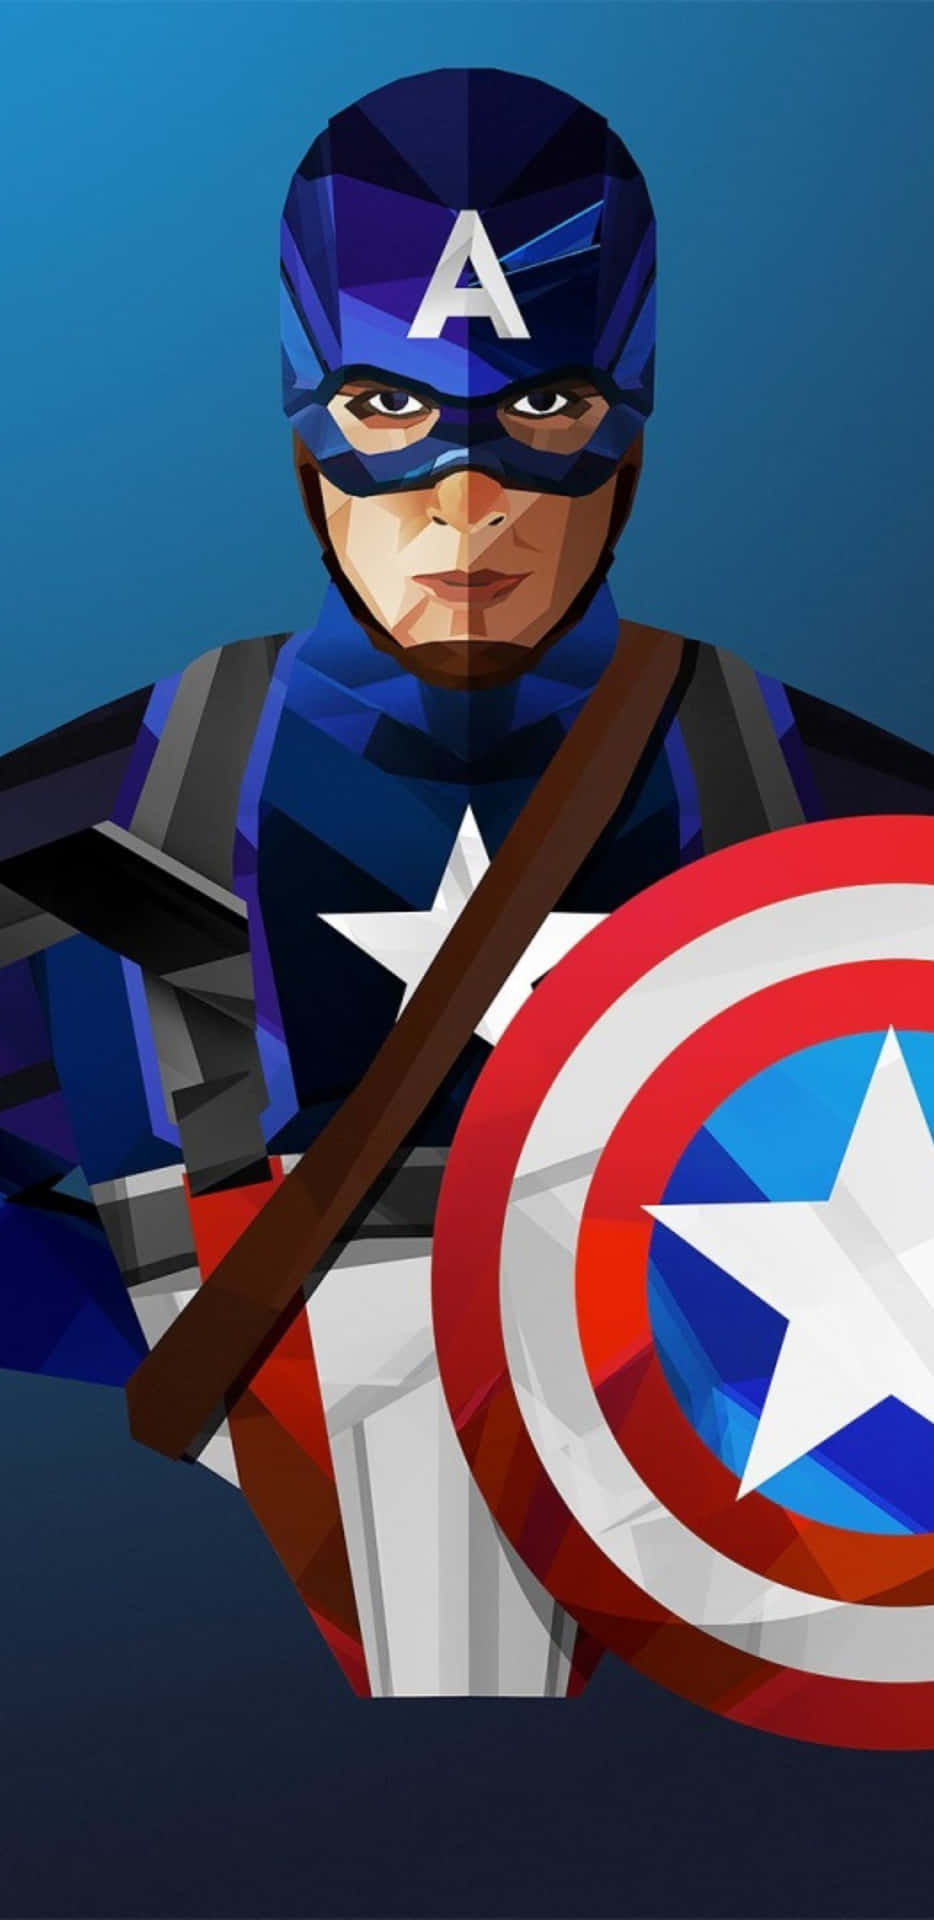 Pixel3xl Hintergrund Mit Captain America In Low Poly Art.